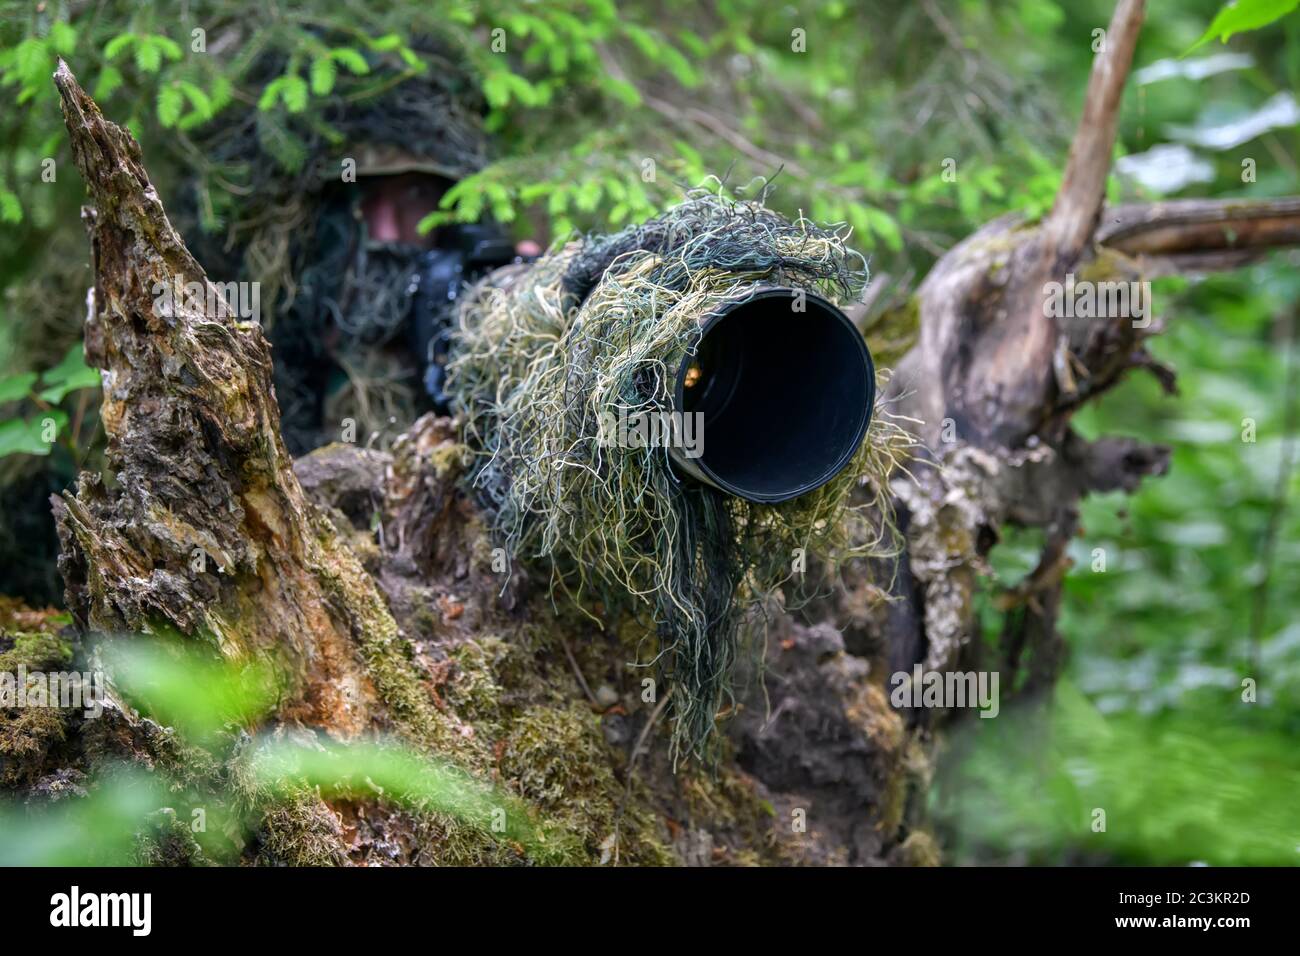 Fotografo di fauna selvatica in estate ghillie camouflage tuta che lavora in natura Foto Stock